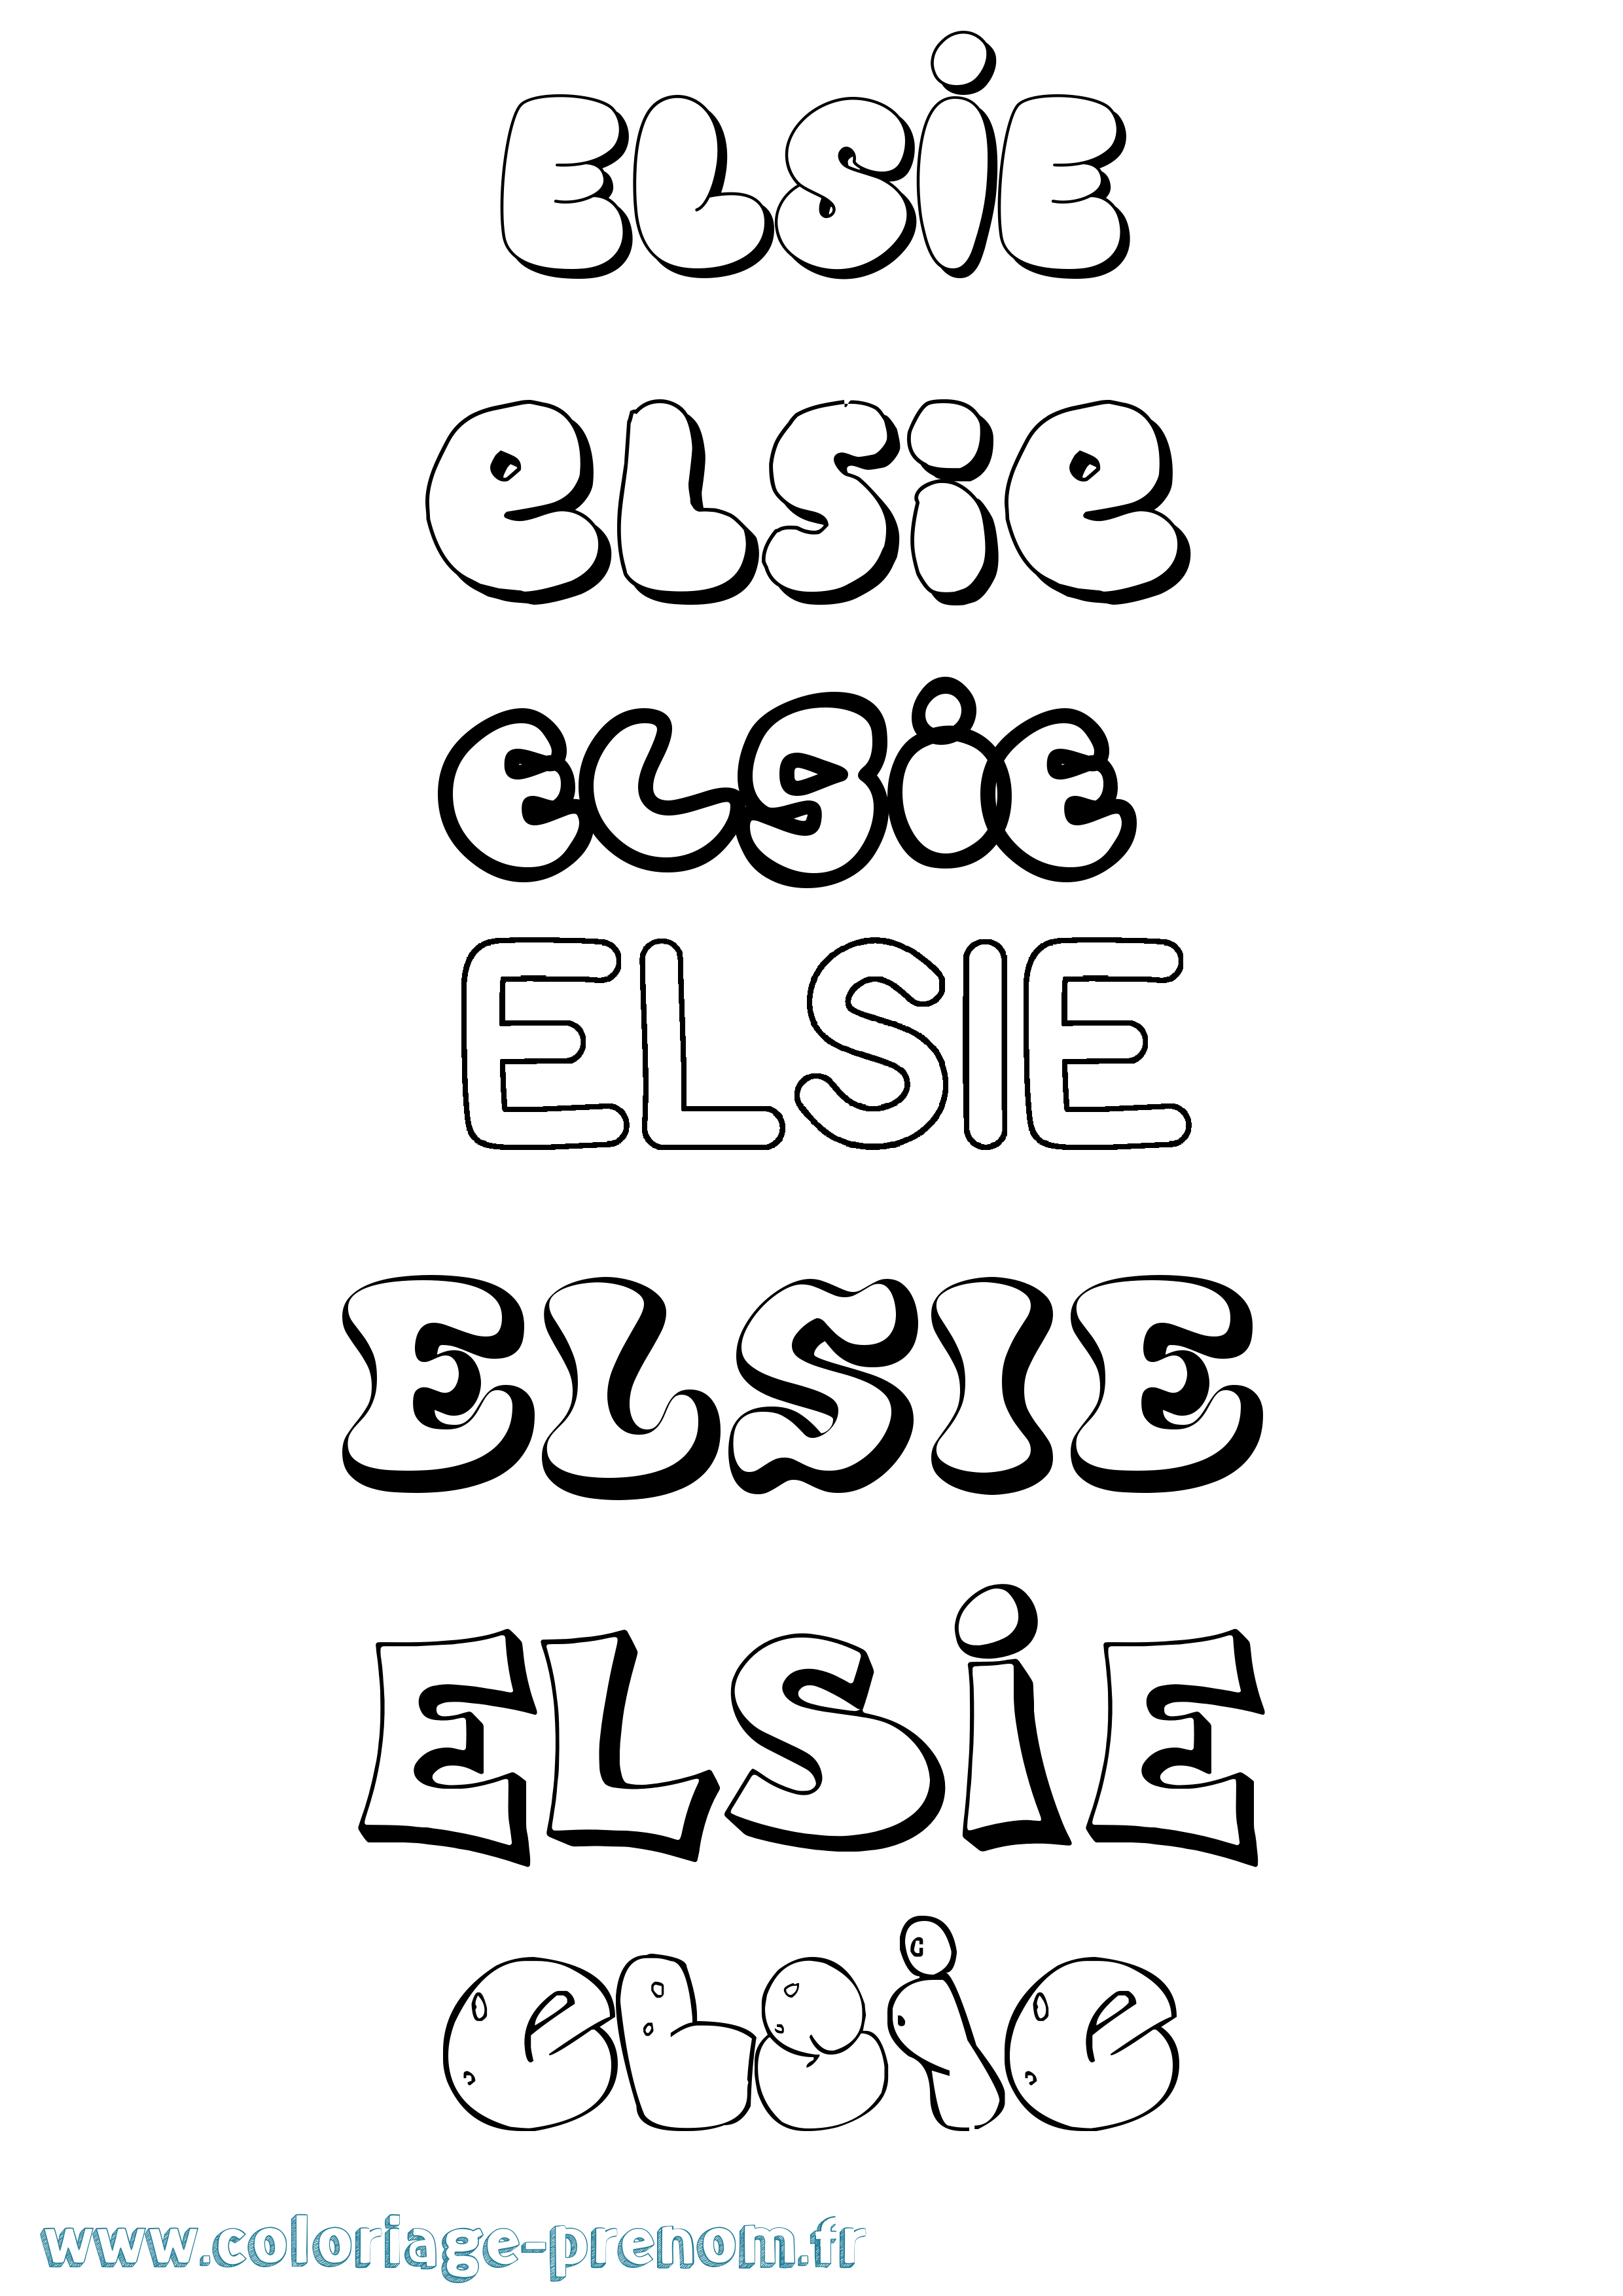 Coloriage prénom Elsie Bubble